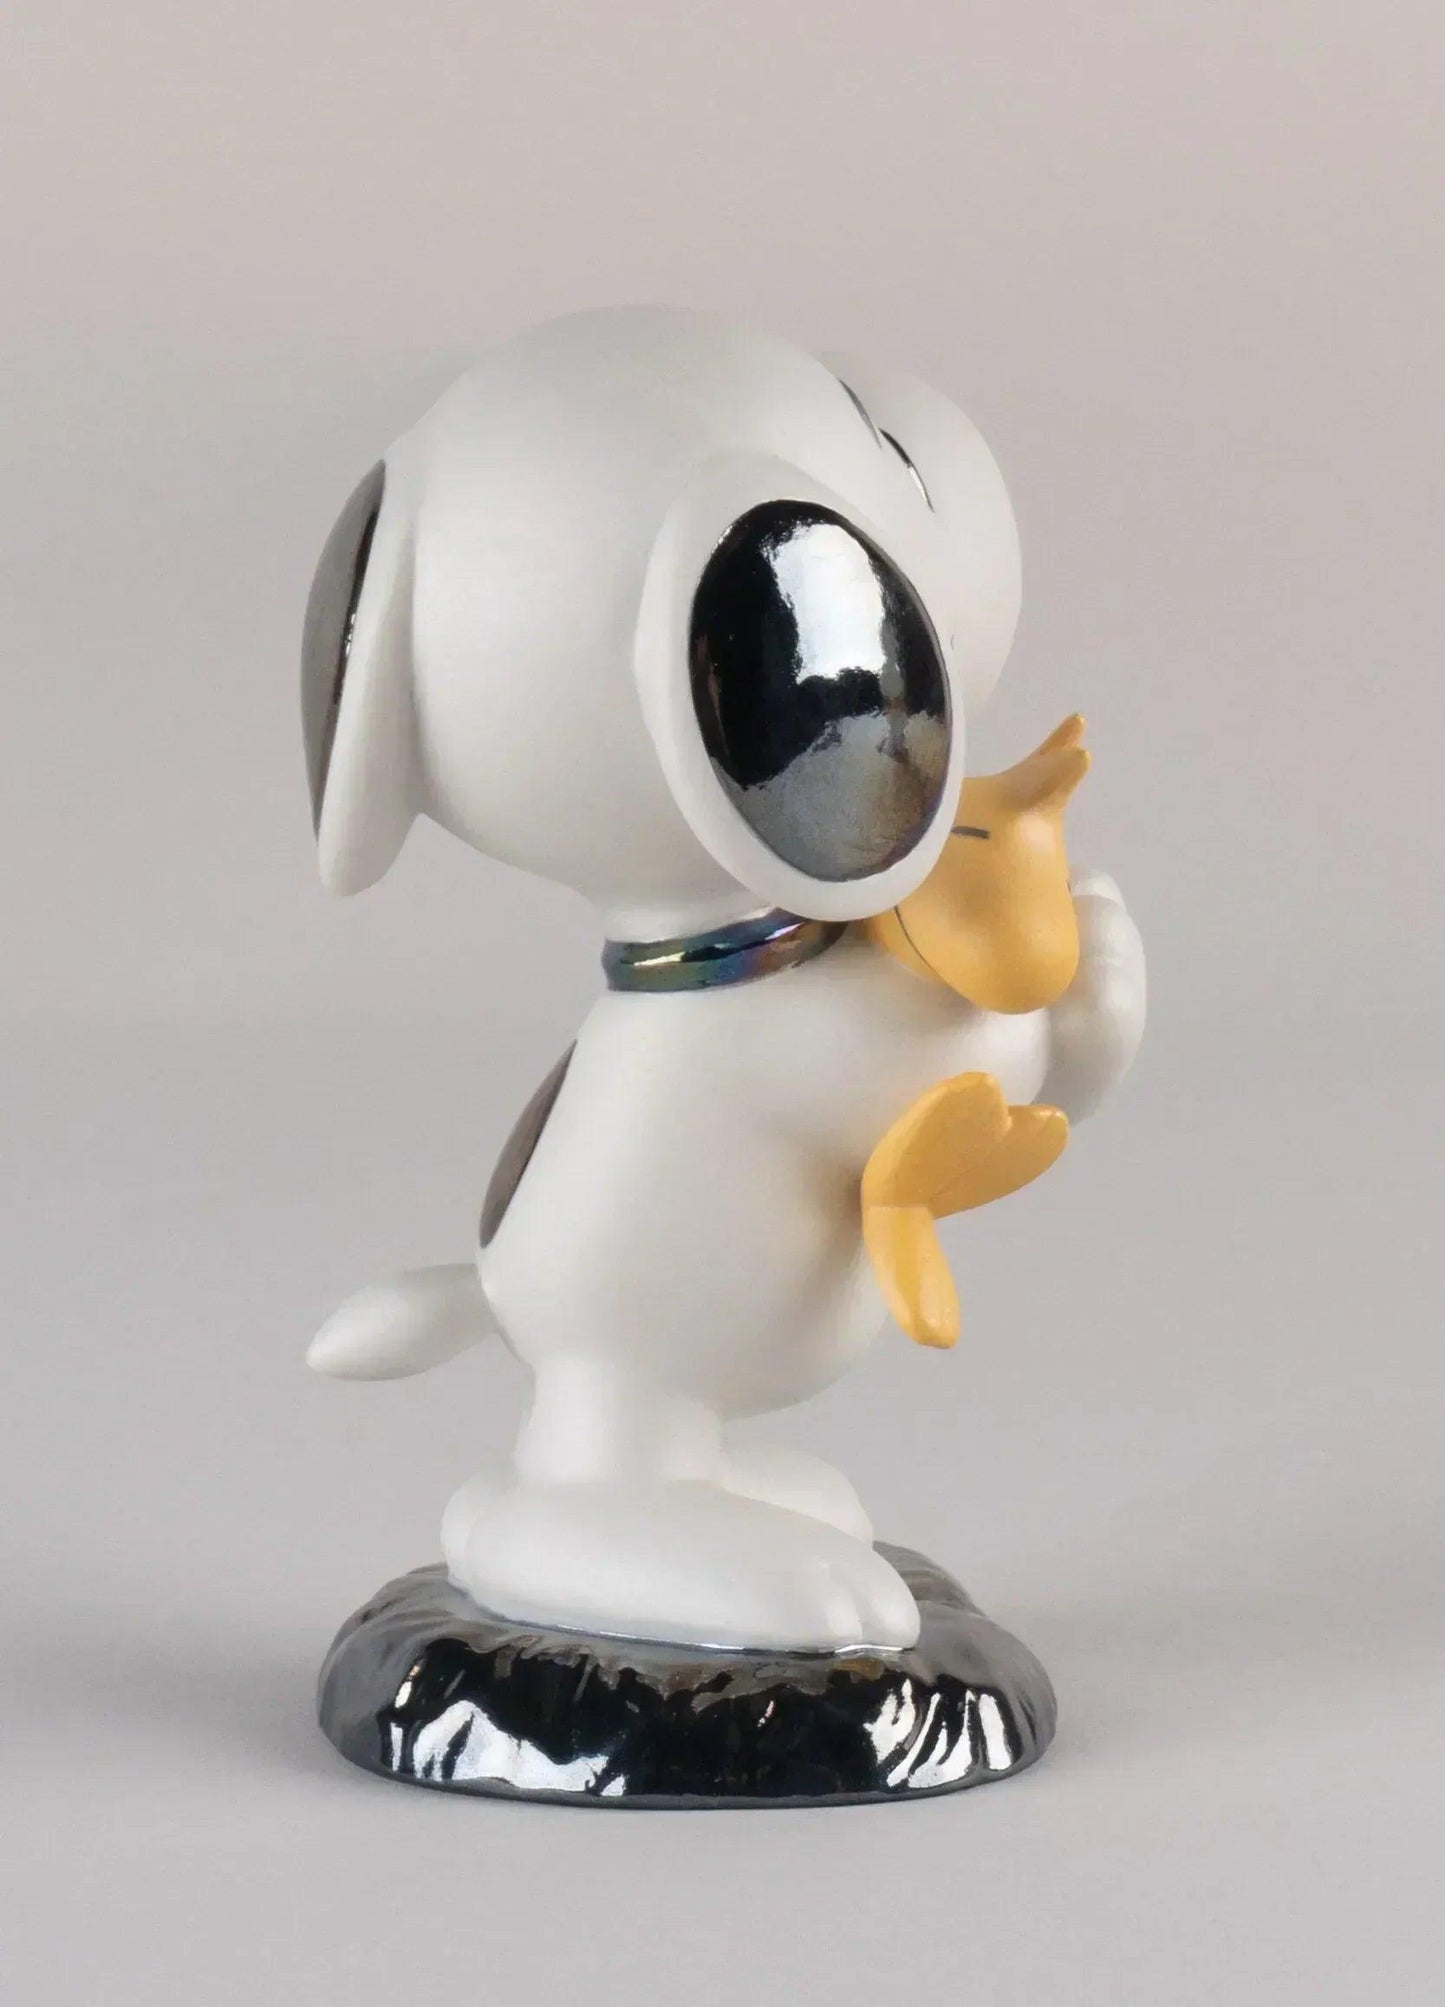 Pop Art Fusion - PopArtFusion - Llardo Lladro x Peanuts™ - Snoopy™ Figurine - Handmade in Spain - Open Edition 01009490 popartfusion.com by Conectid